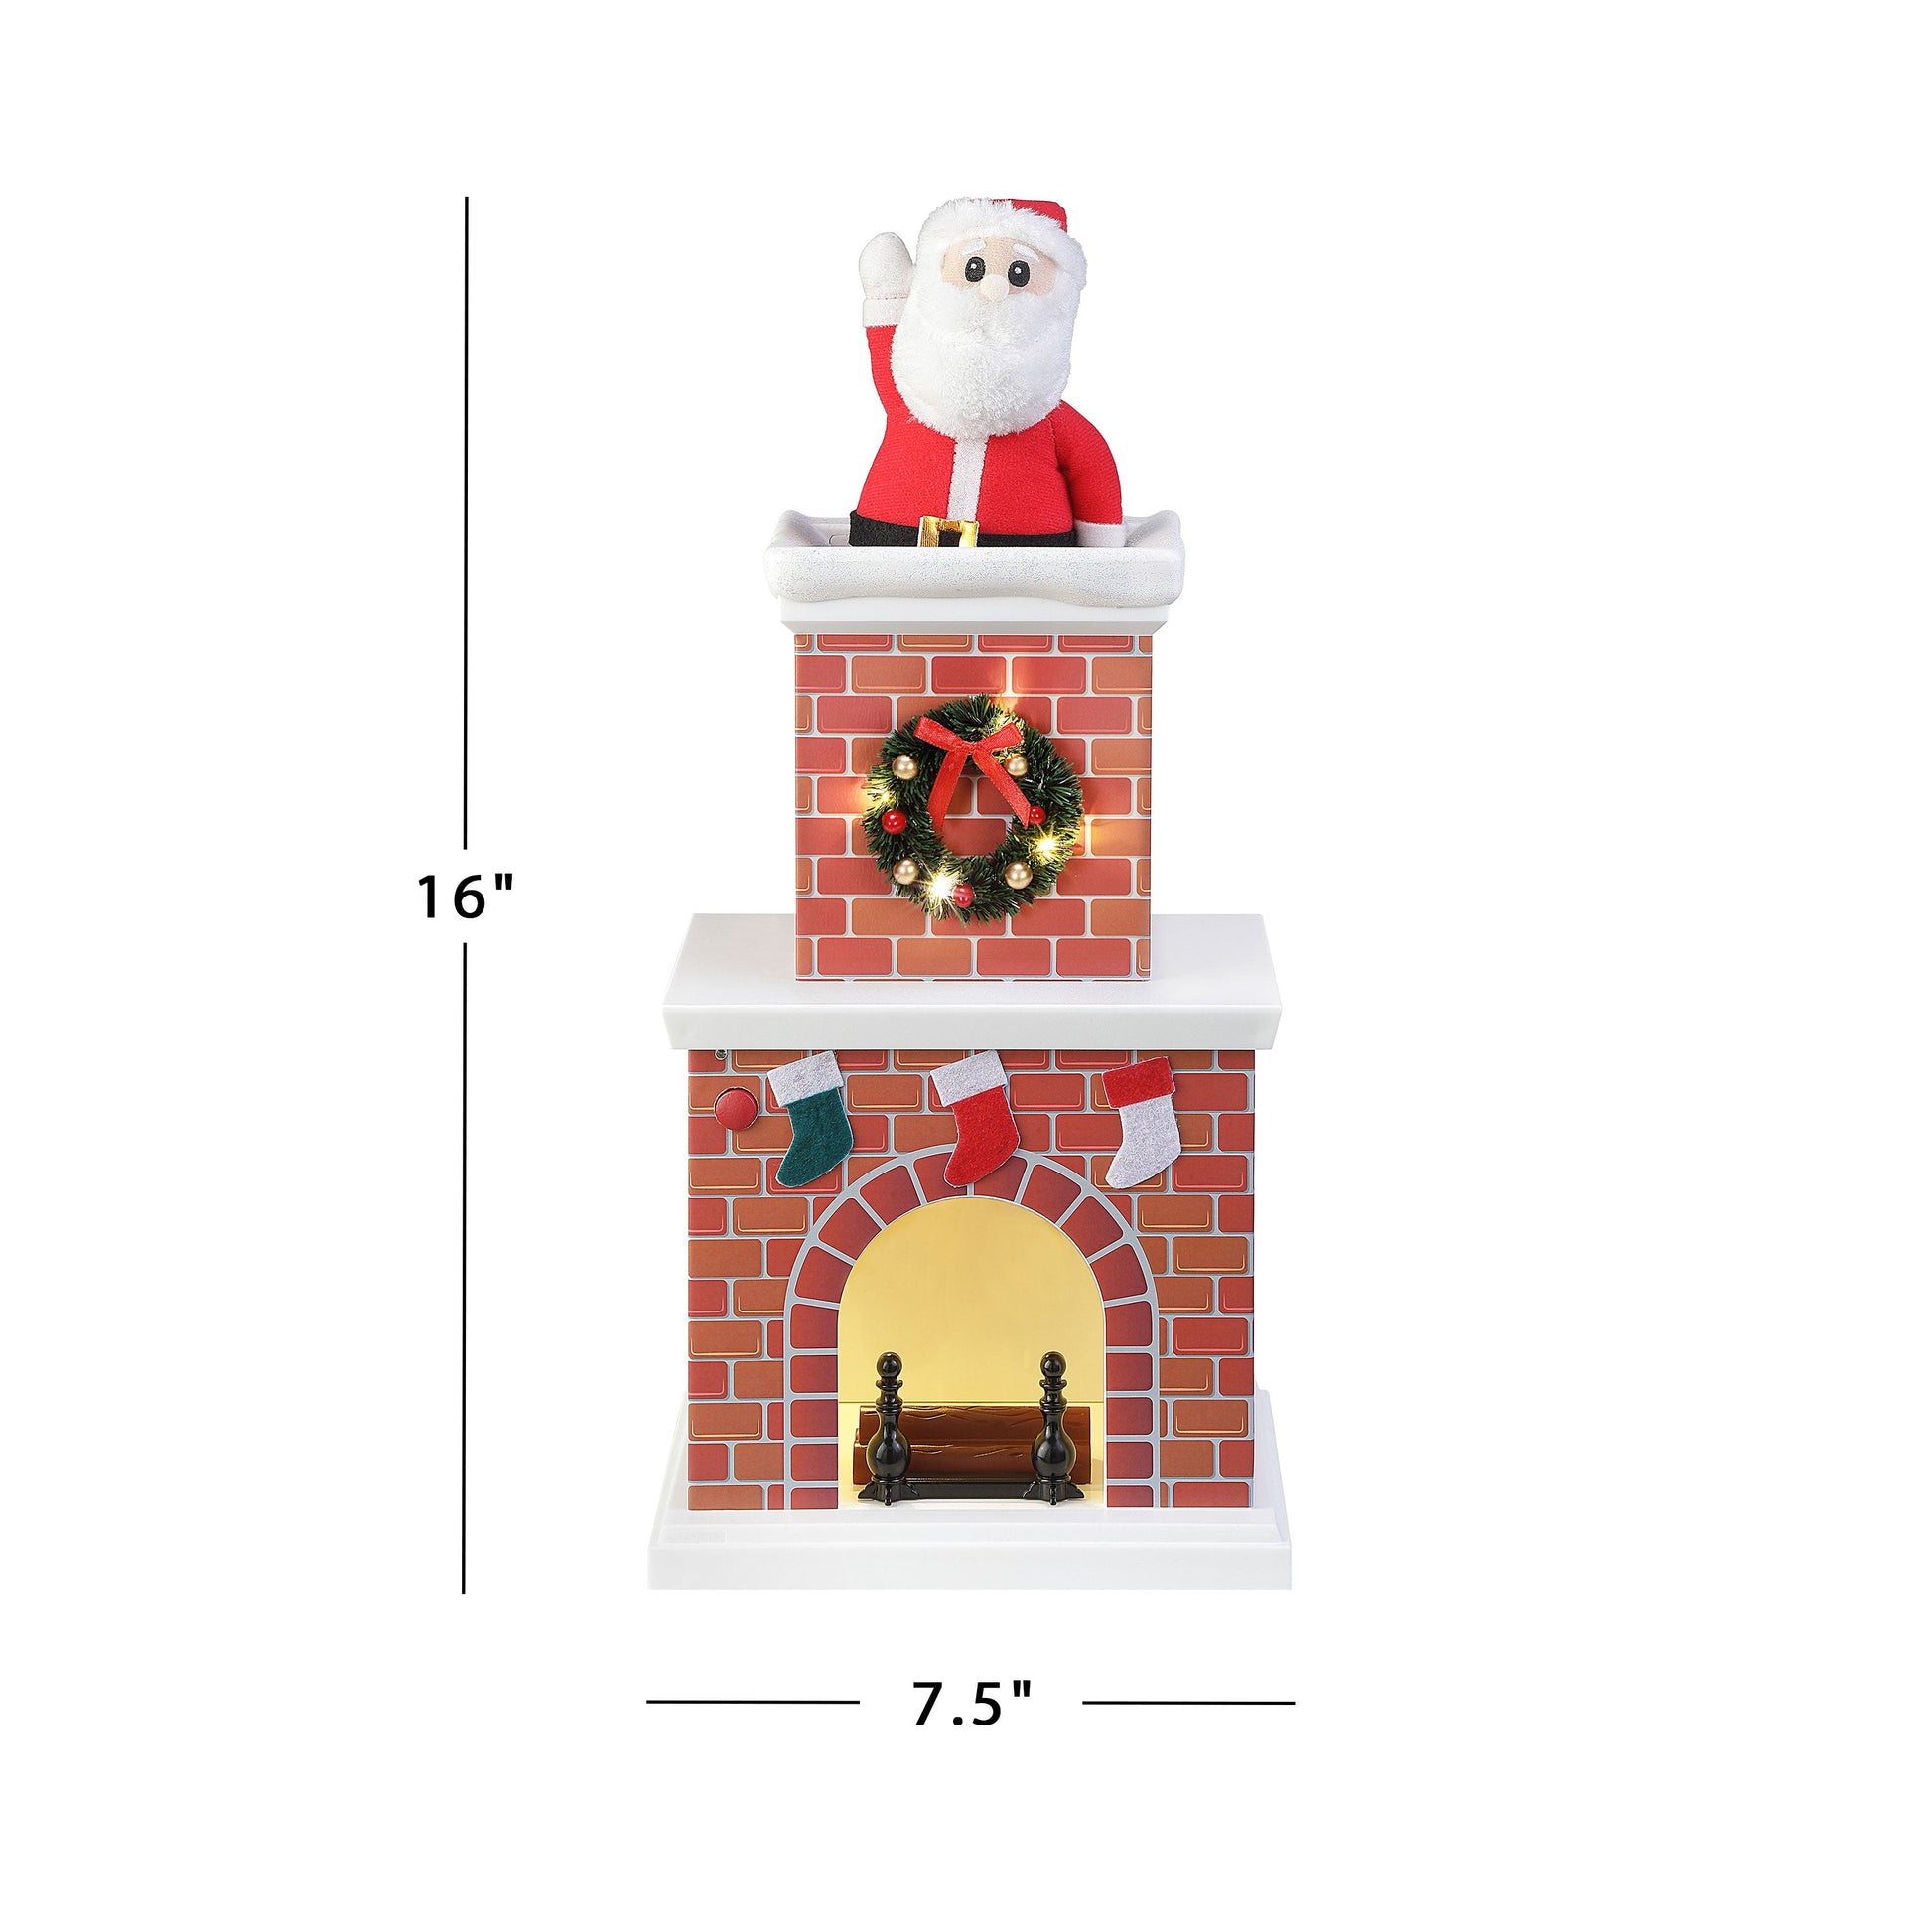 16" Animated Santa in Chimney - White